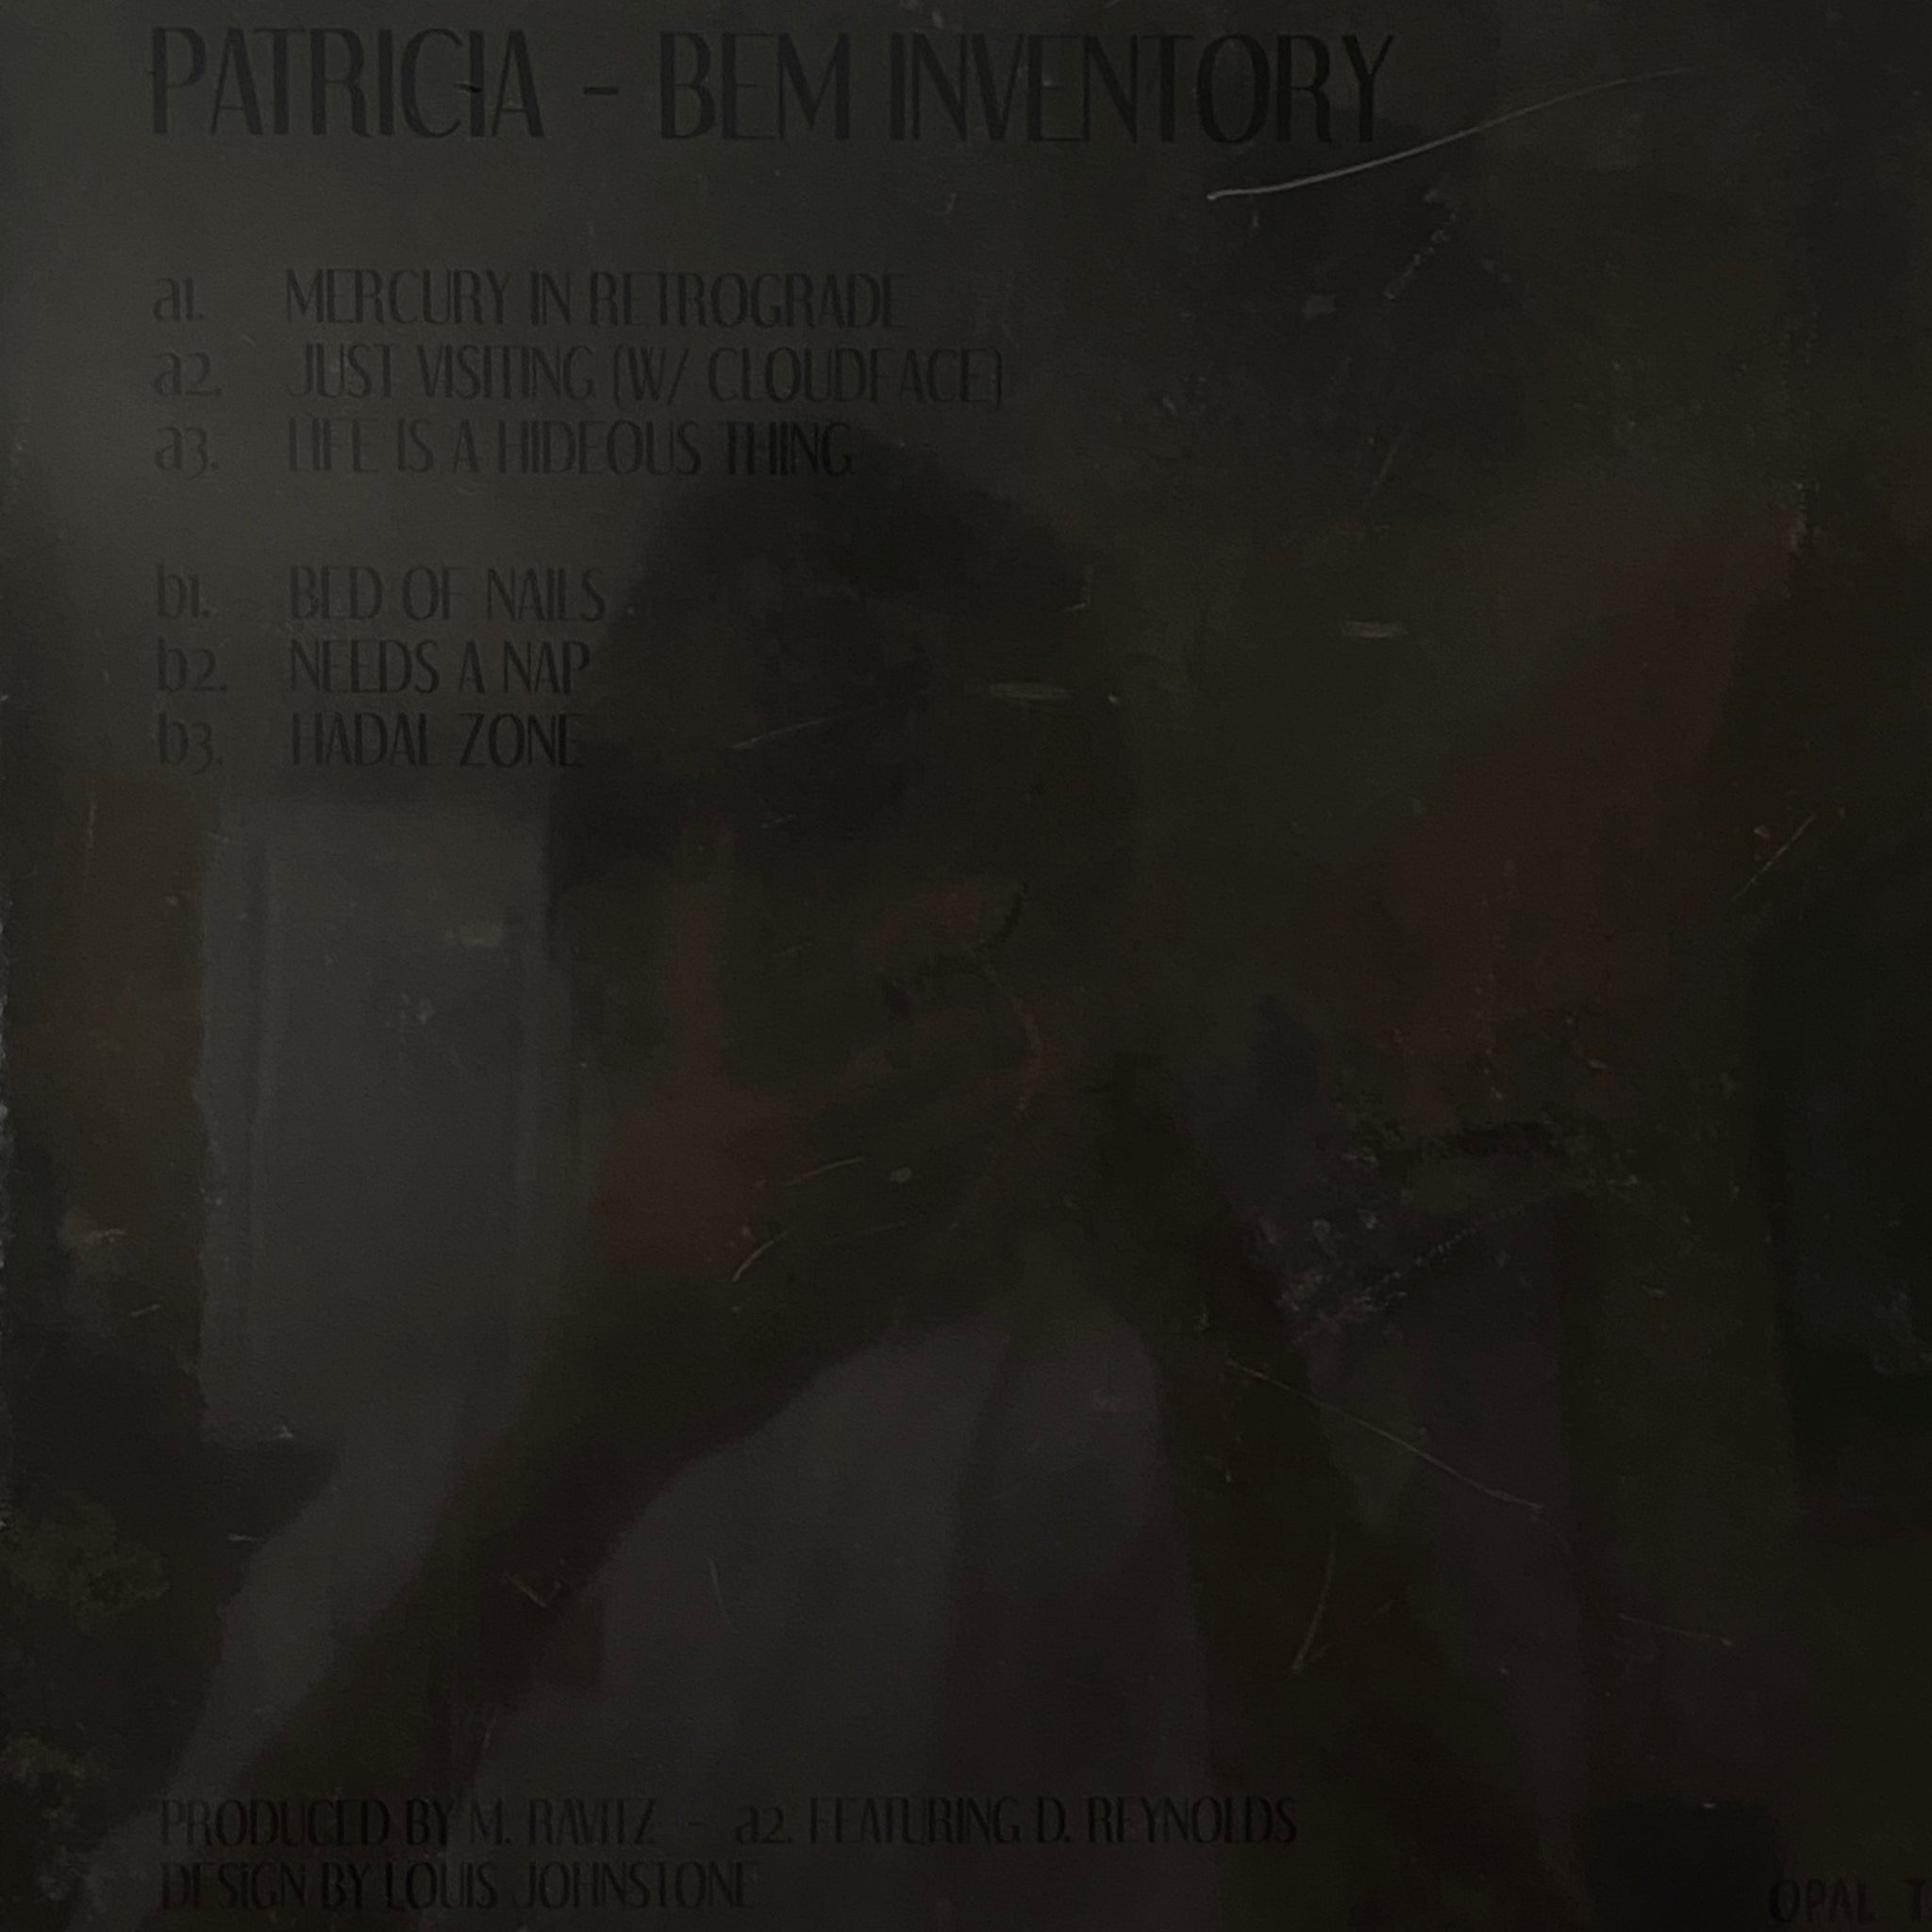 Patricia – Bem Inventory